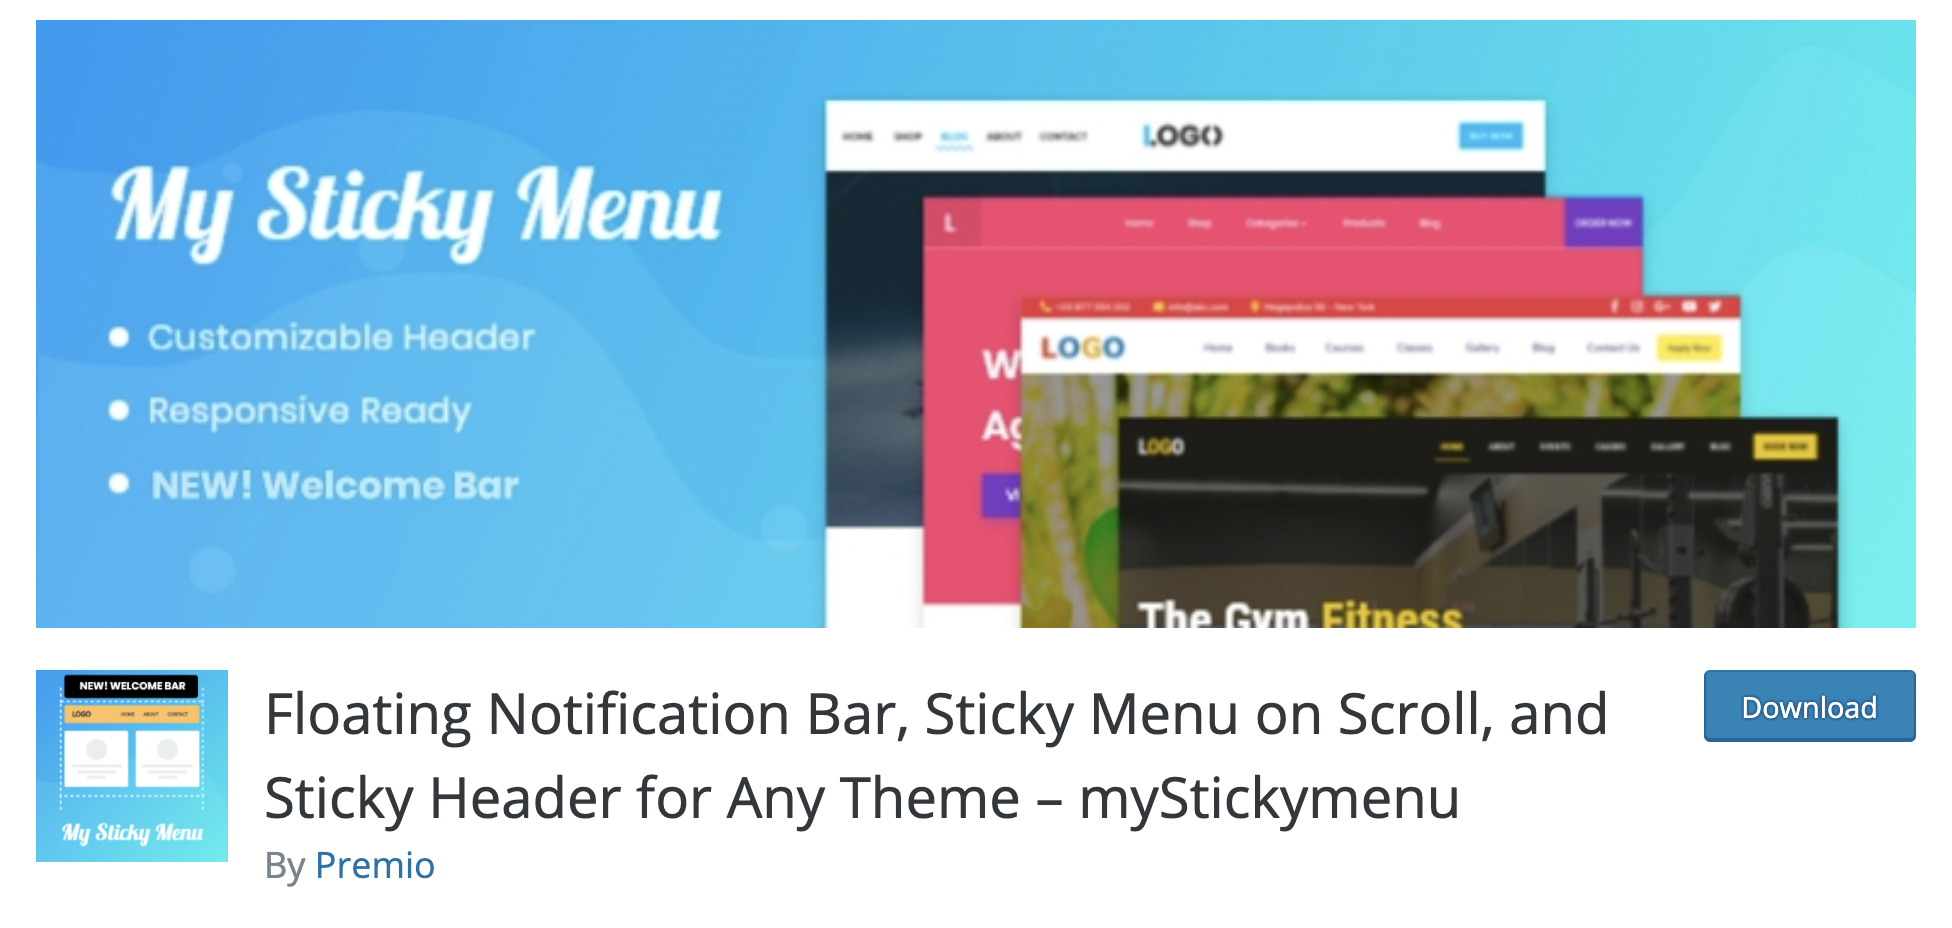 Floating Notification Bar, Sticky Menu on Scroll, and Sticky Header for Any Theme – myStickymenu